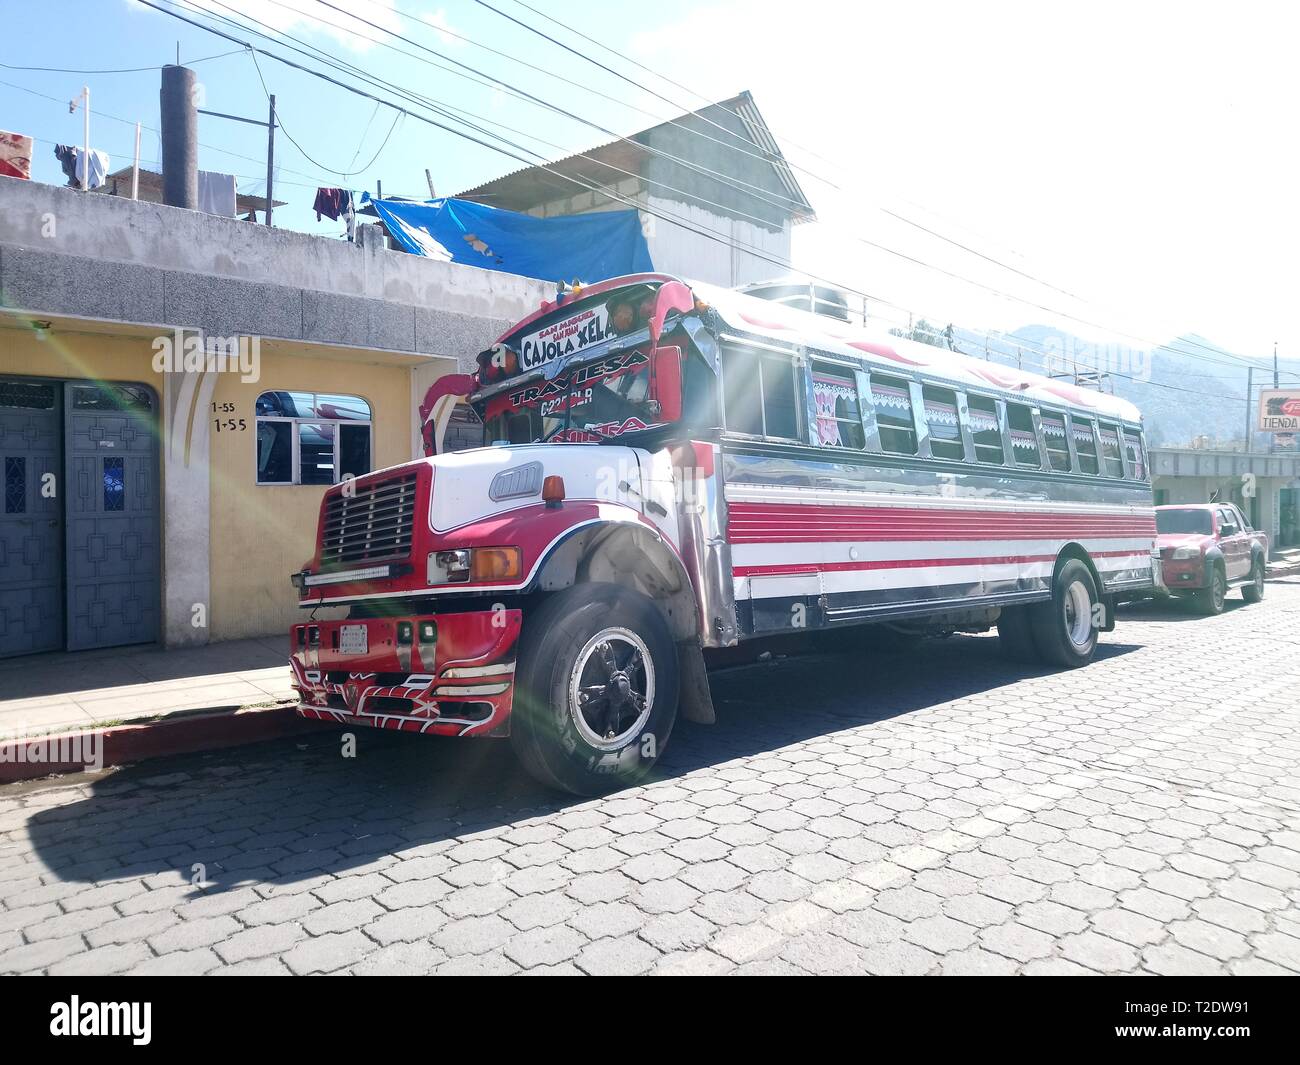 transporte publico transporte de parilla buses unicas en guatemala camioneta ruta a cajola a la ciudad del quetzal de los latos xela, guatemala bus Stock Photo